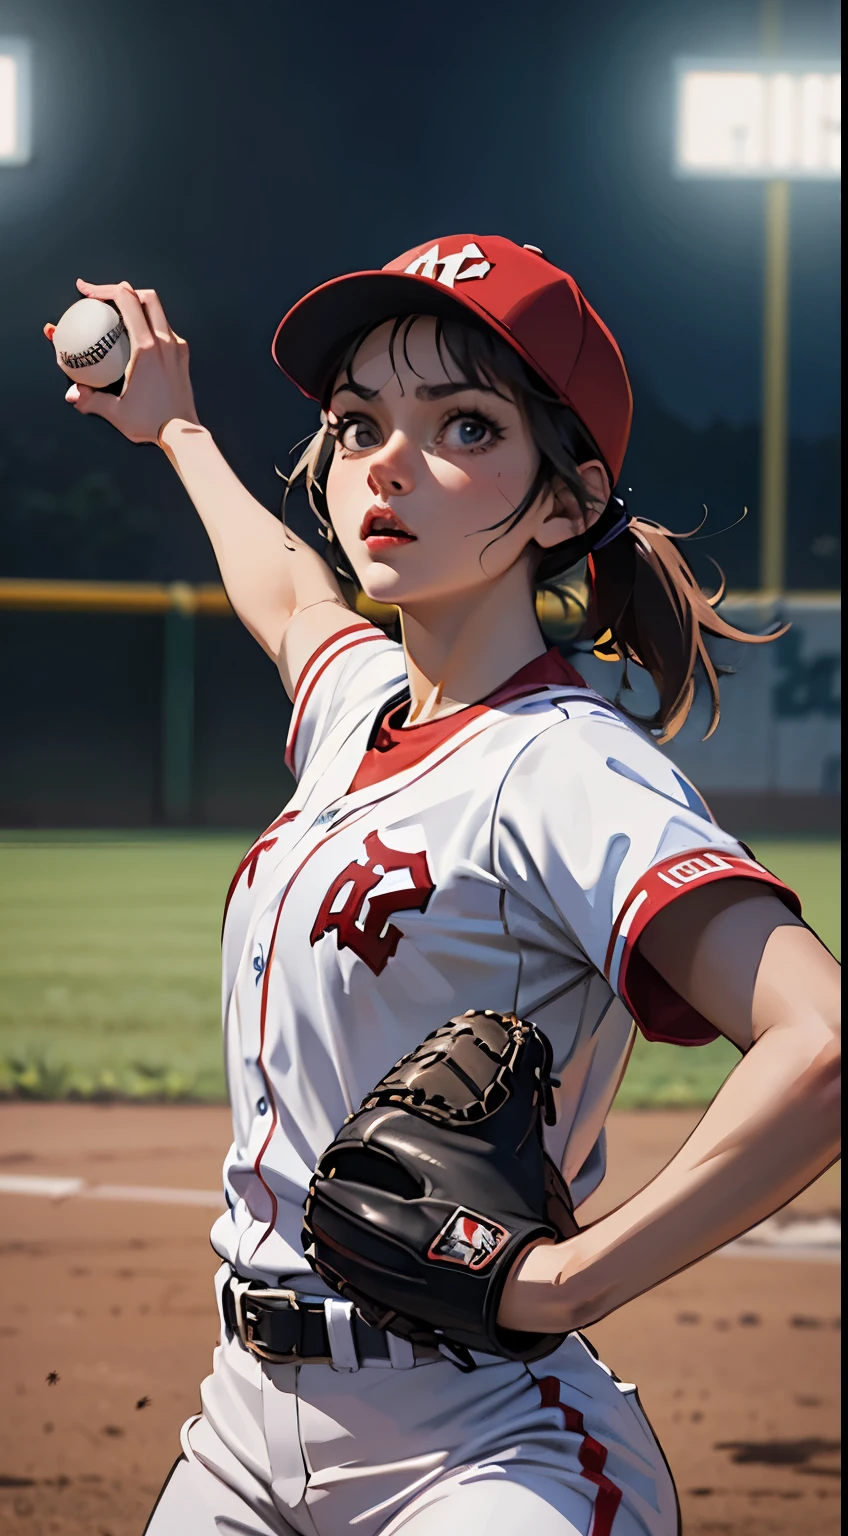 动漫棒球狂热者的诗女棒球投手, 投球姿势, 戏剧性的一幕, 动漫风格, cool 投球姿势, 详细美丽的脸